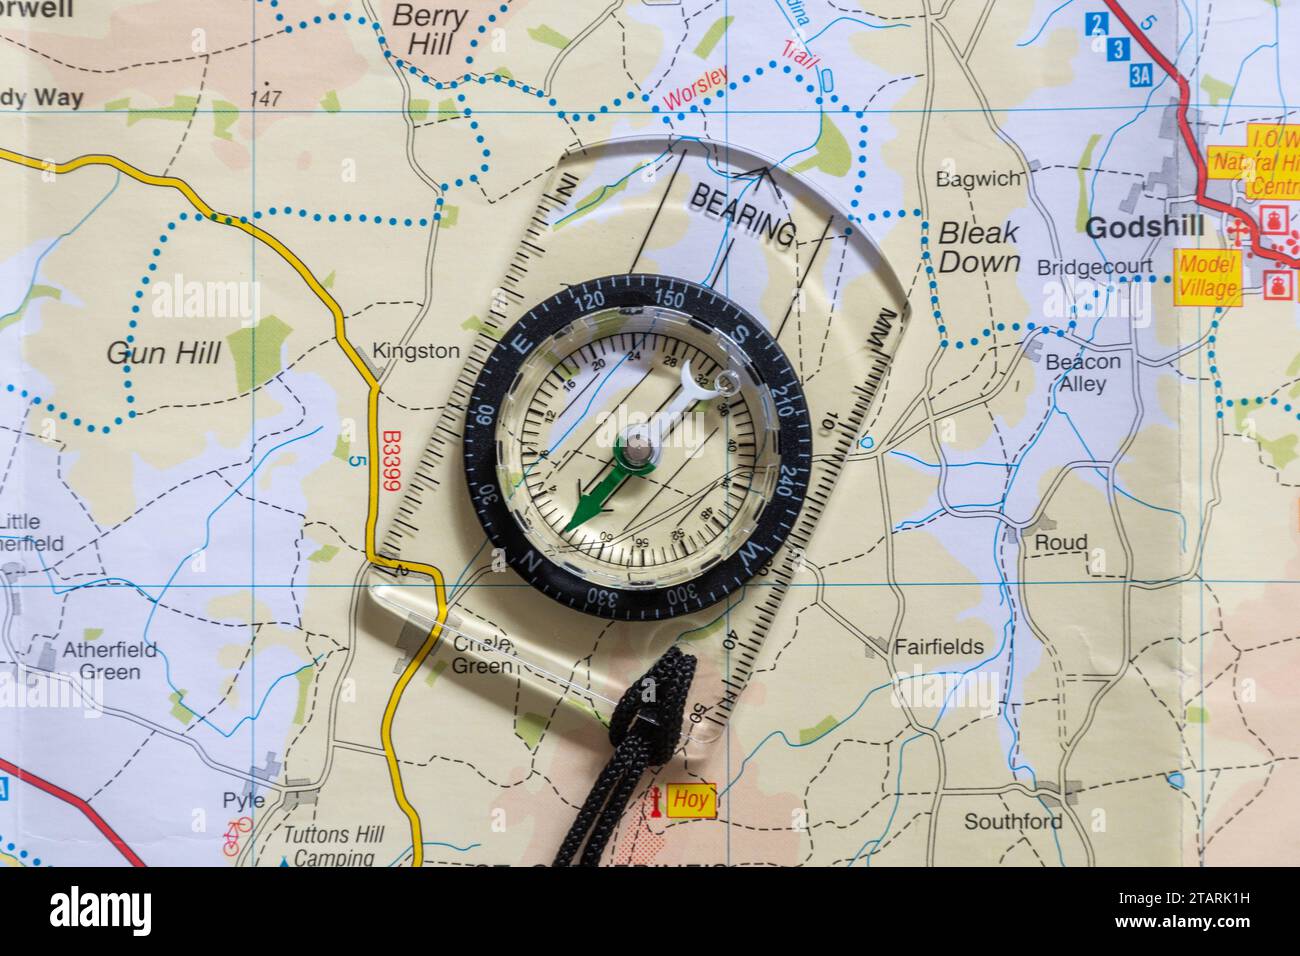 Une carte et une boussole, Angleterre, Royaume-Uni. Concept : navigation, trouver votre chemin, direction, relèvement Banque D'Images